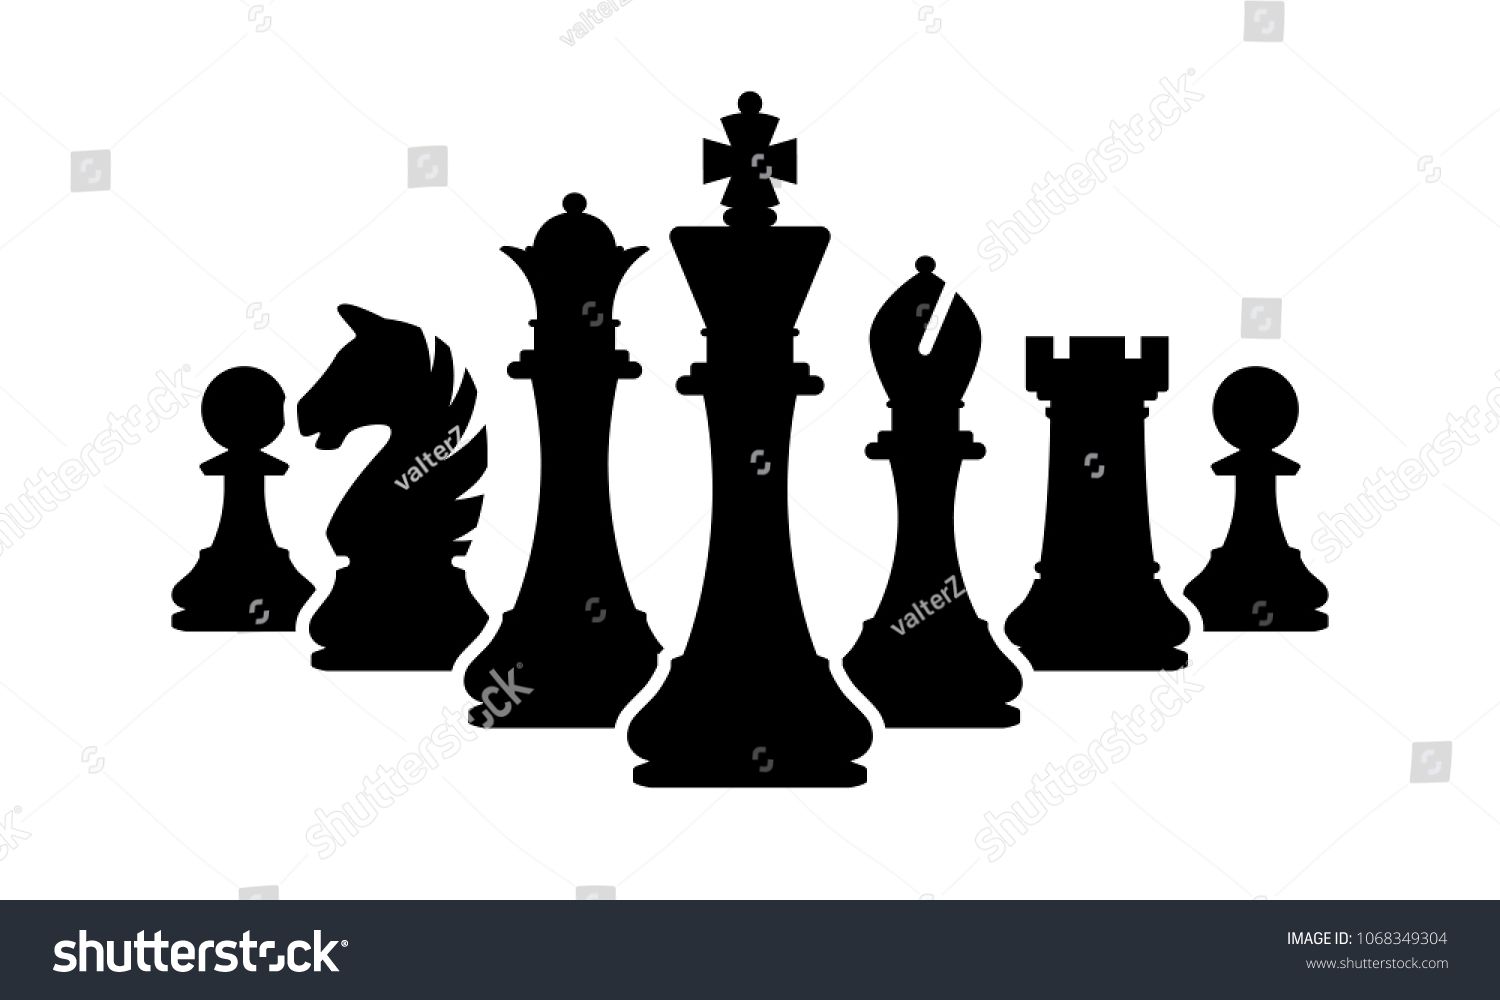 Vector chess pieces.